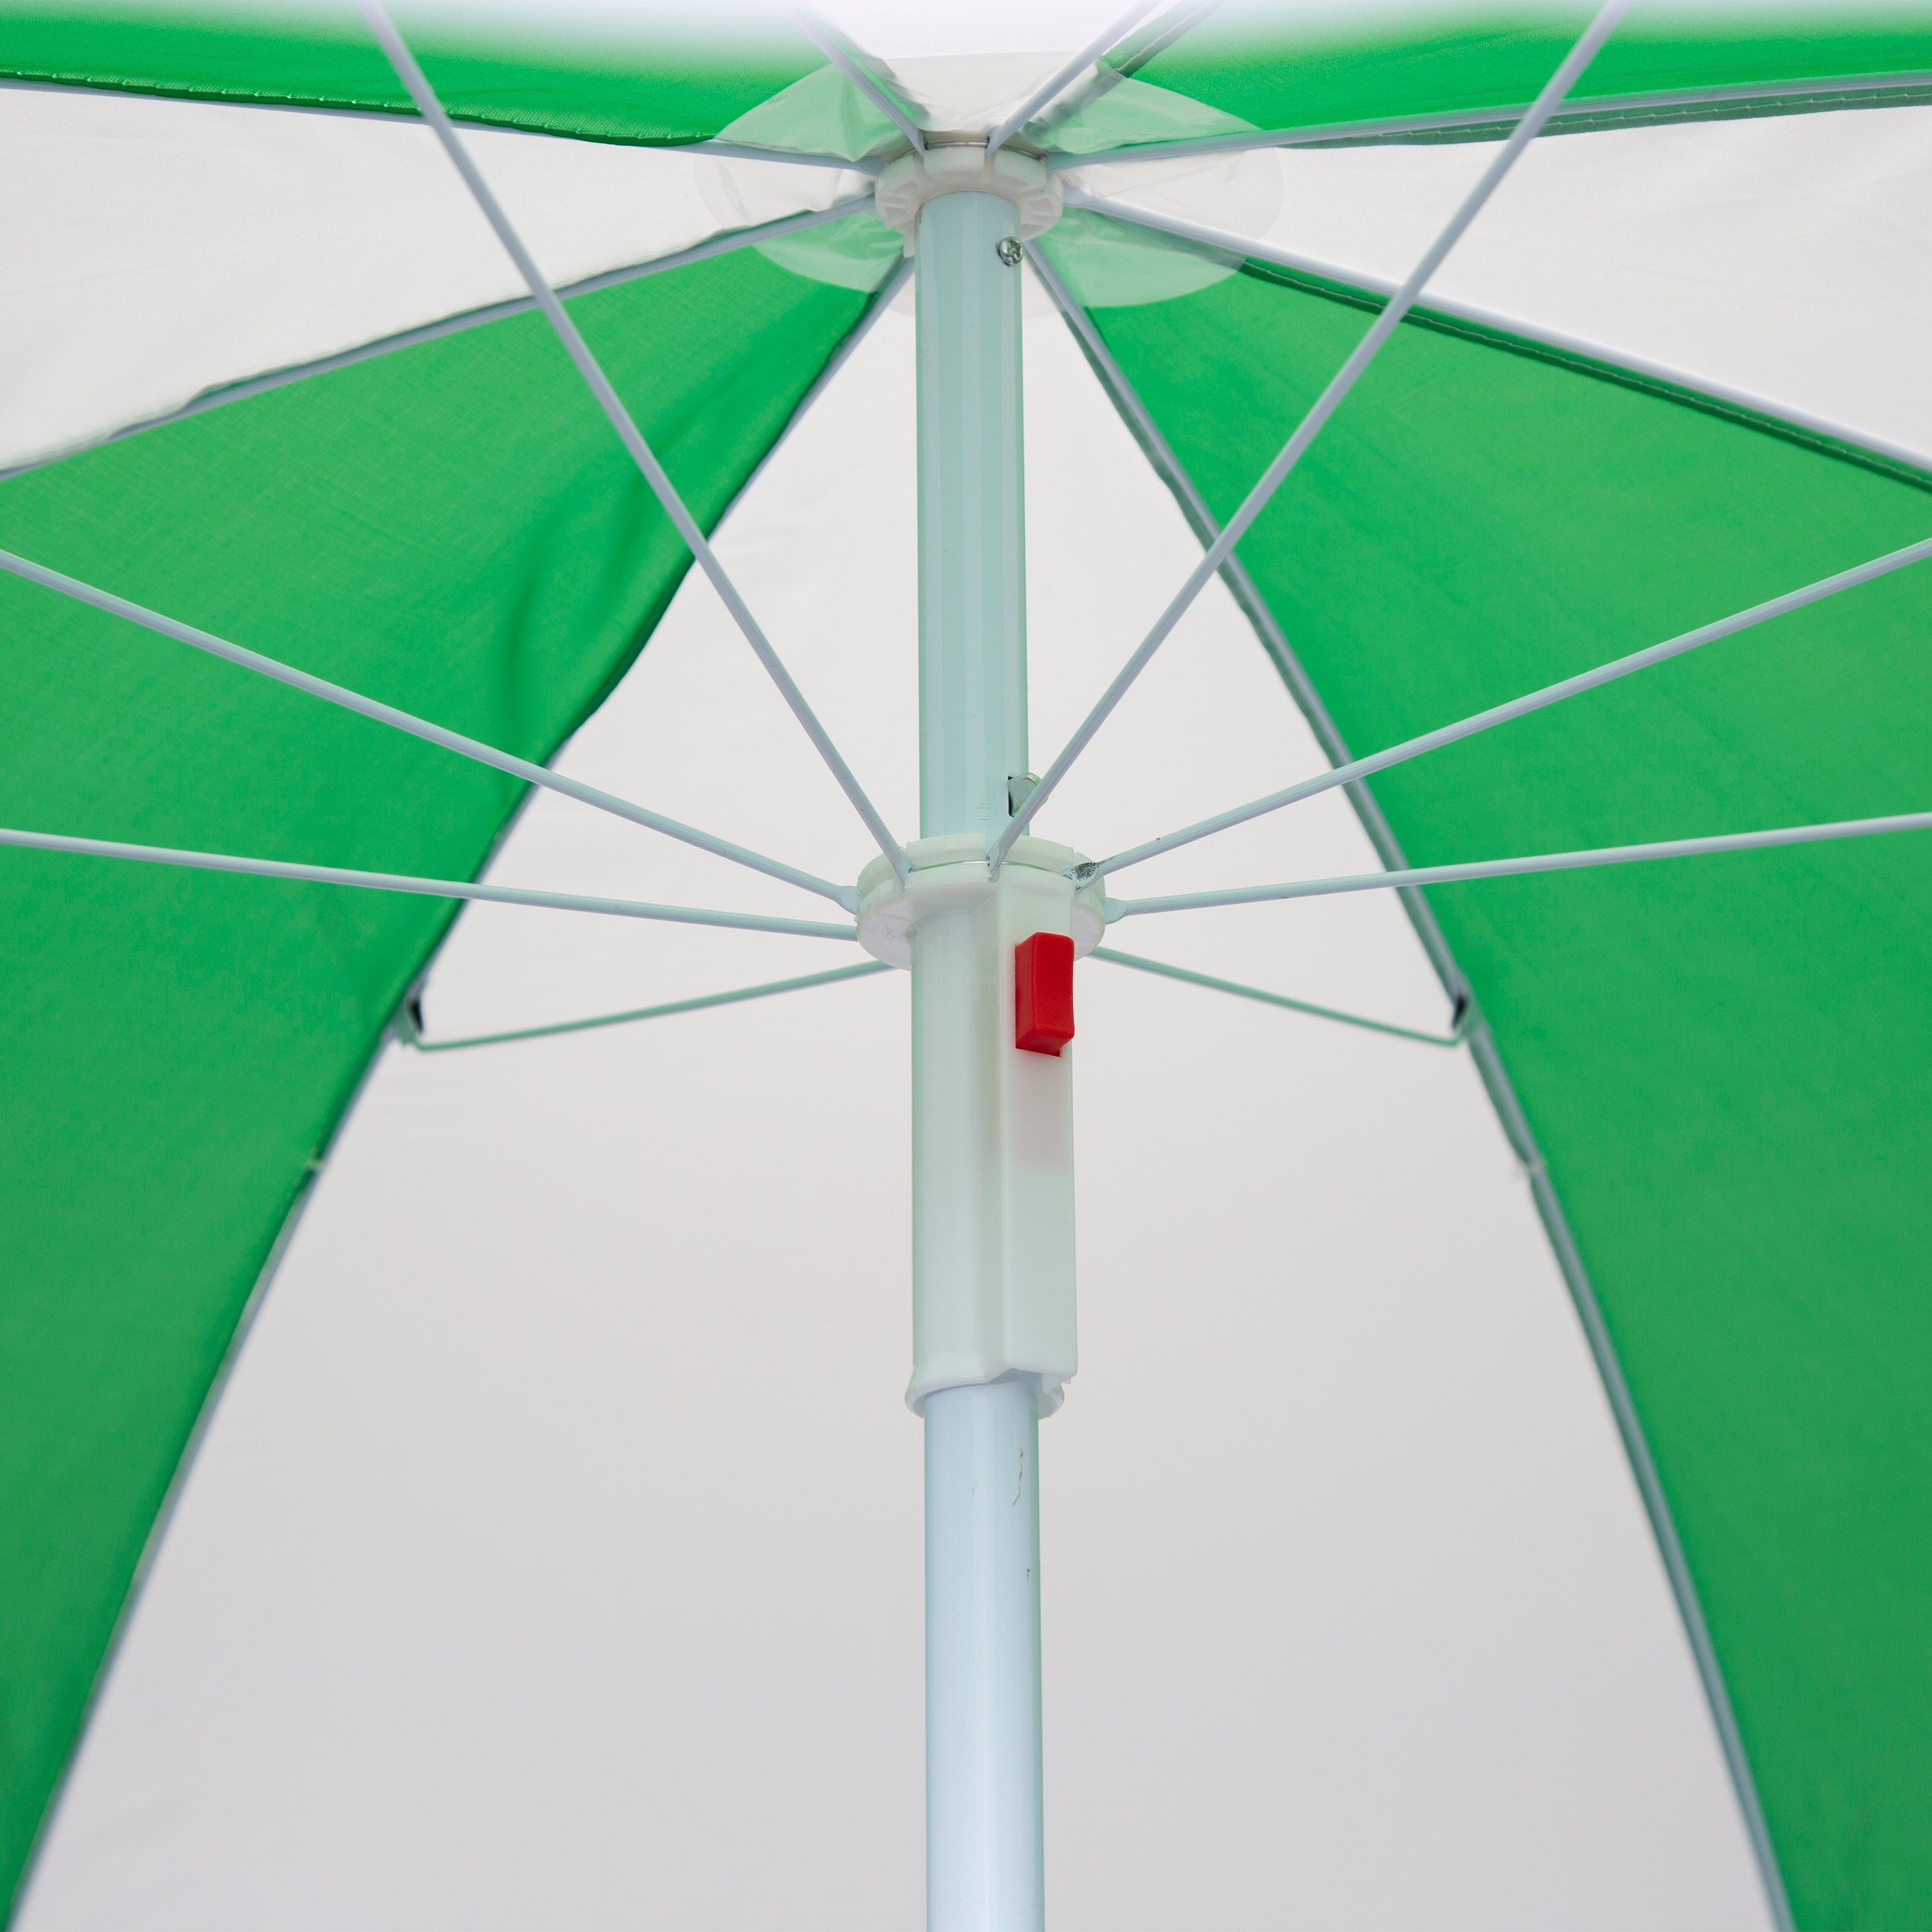 Picnic Umbrella